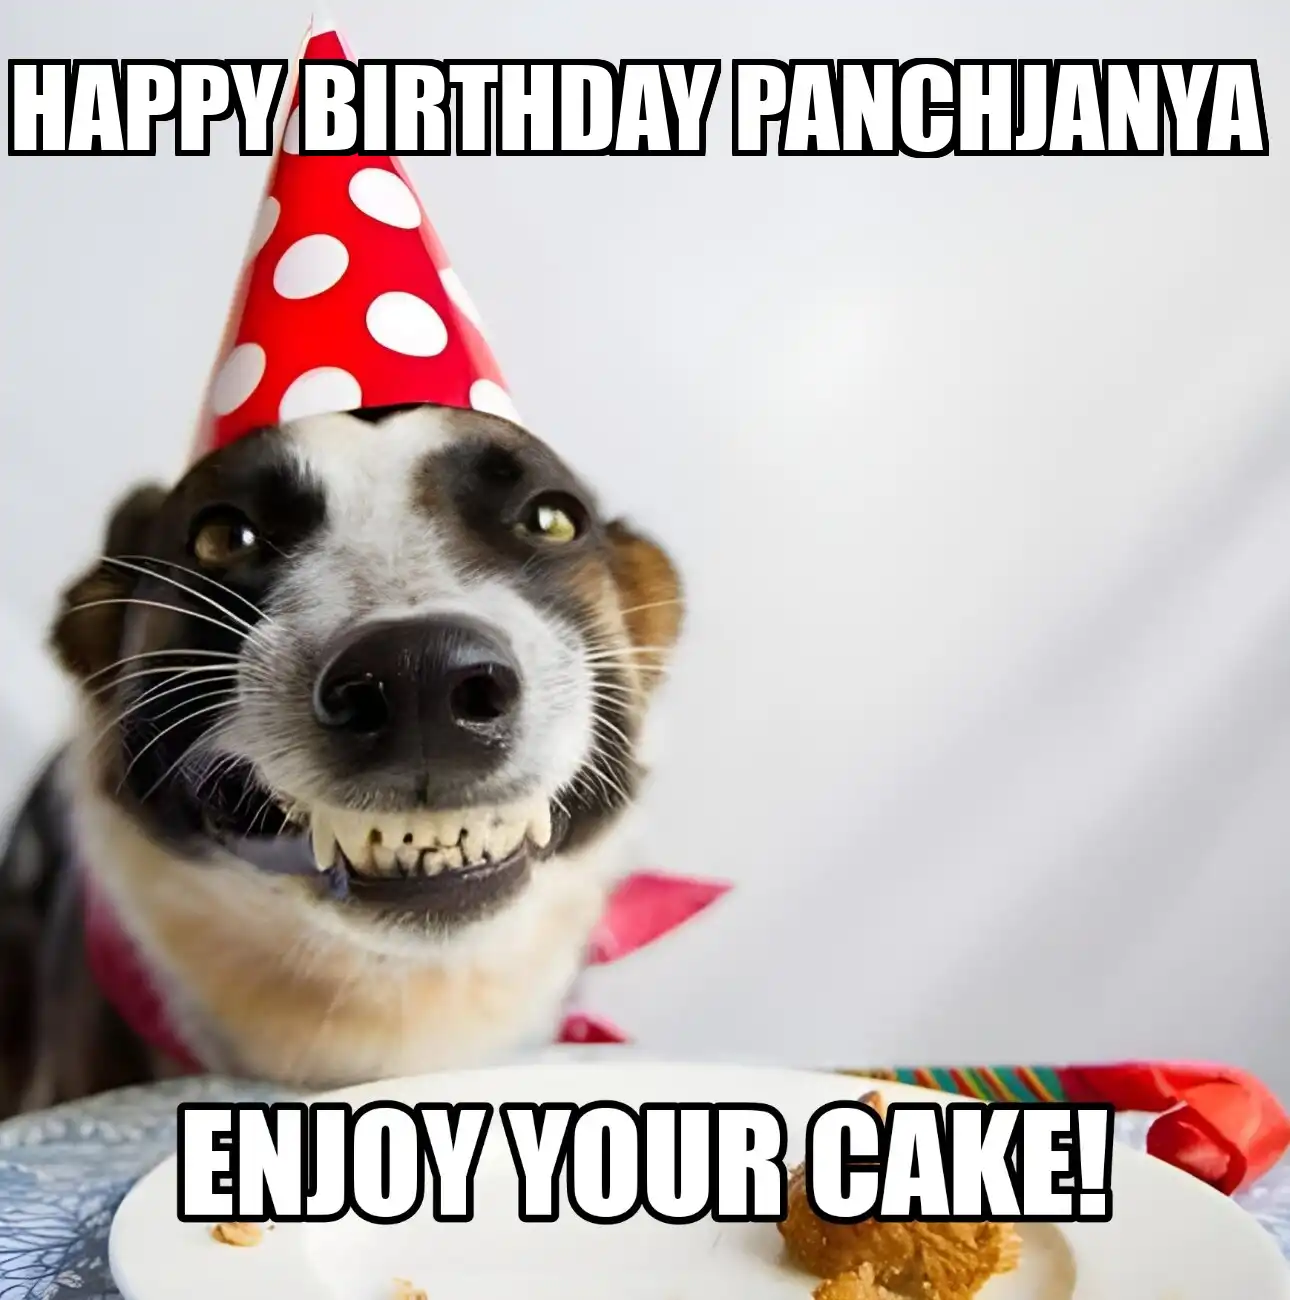 Happy Birthday Panchjanya Enjoy Your Cake Dog Meme